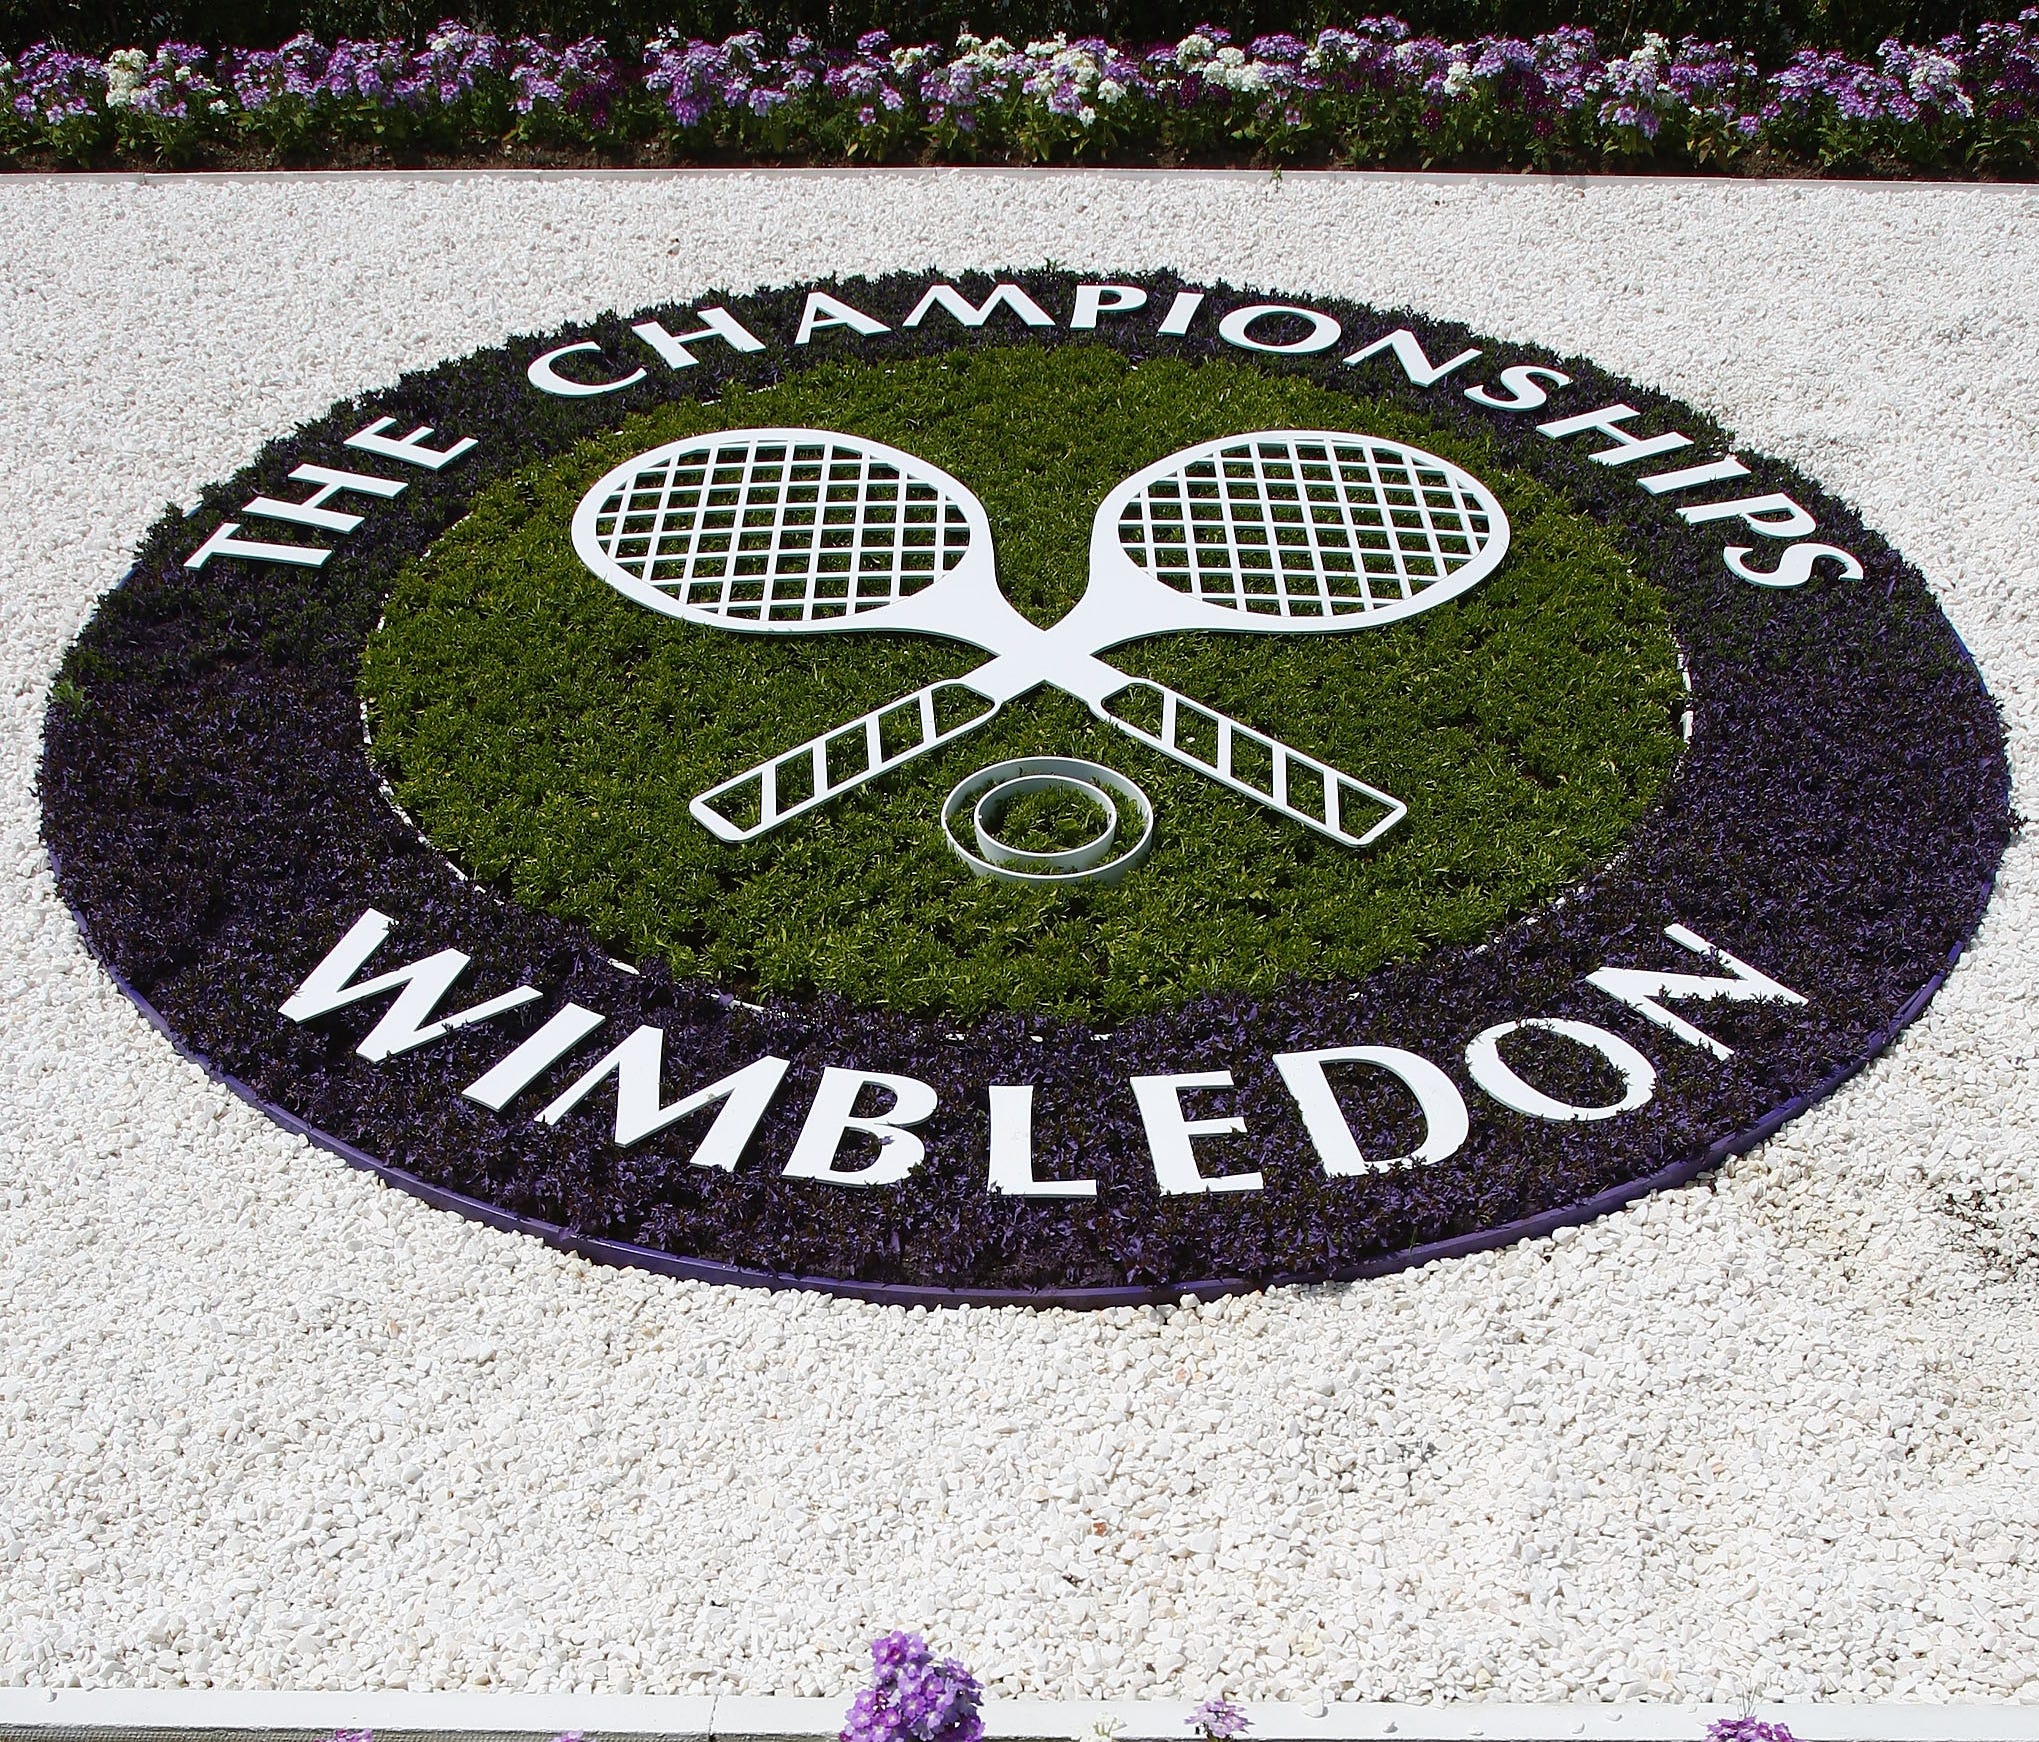 The Wimbledon logo.